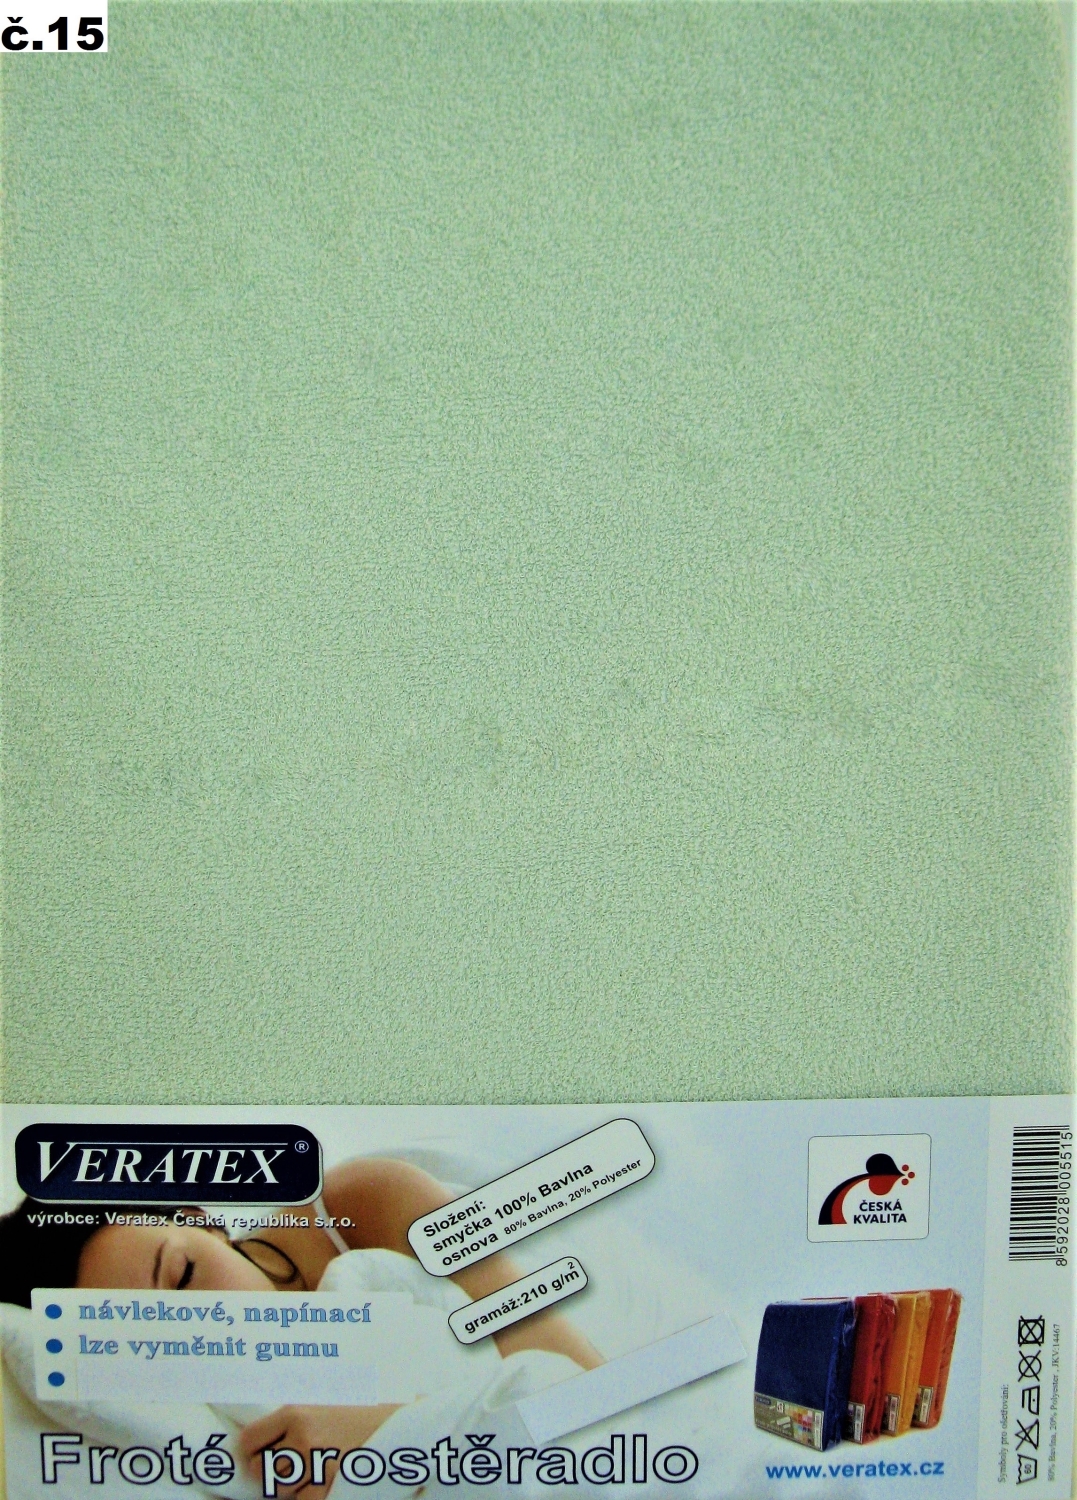 Veratex Froté prostěradlo 130x200/16 cm (č.15 sv.zelená)